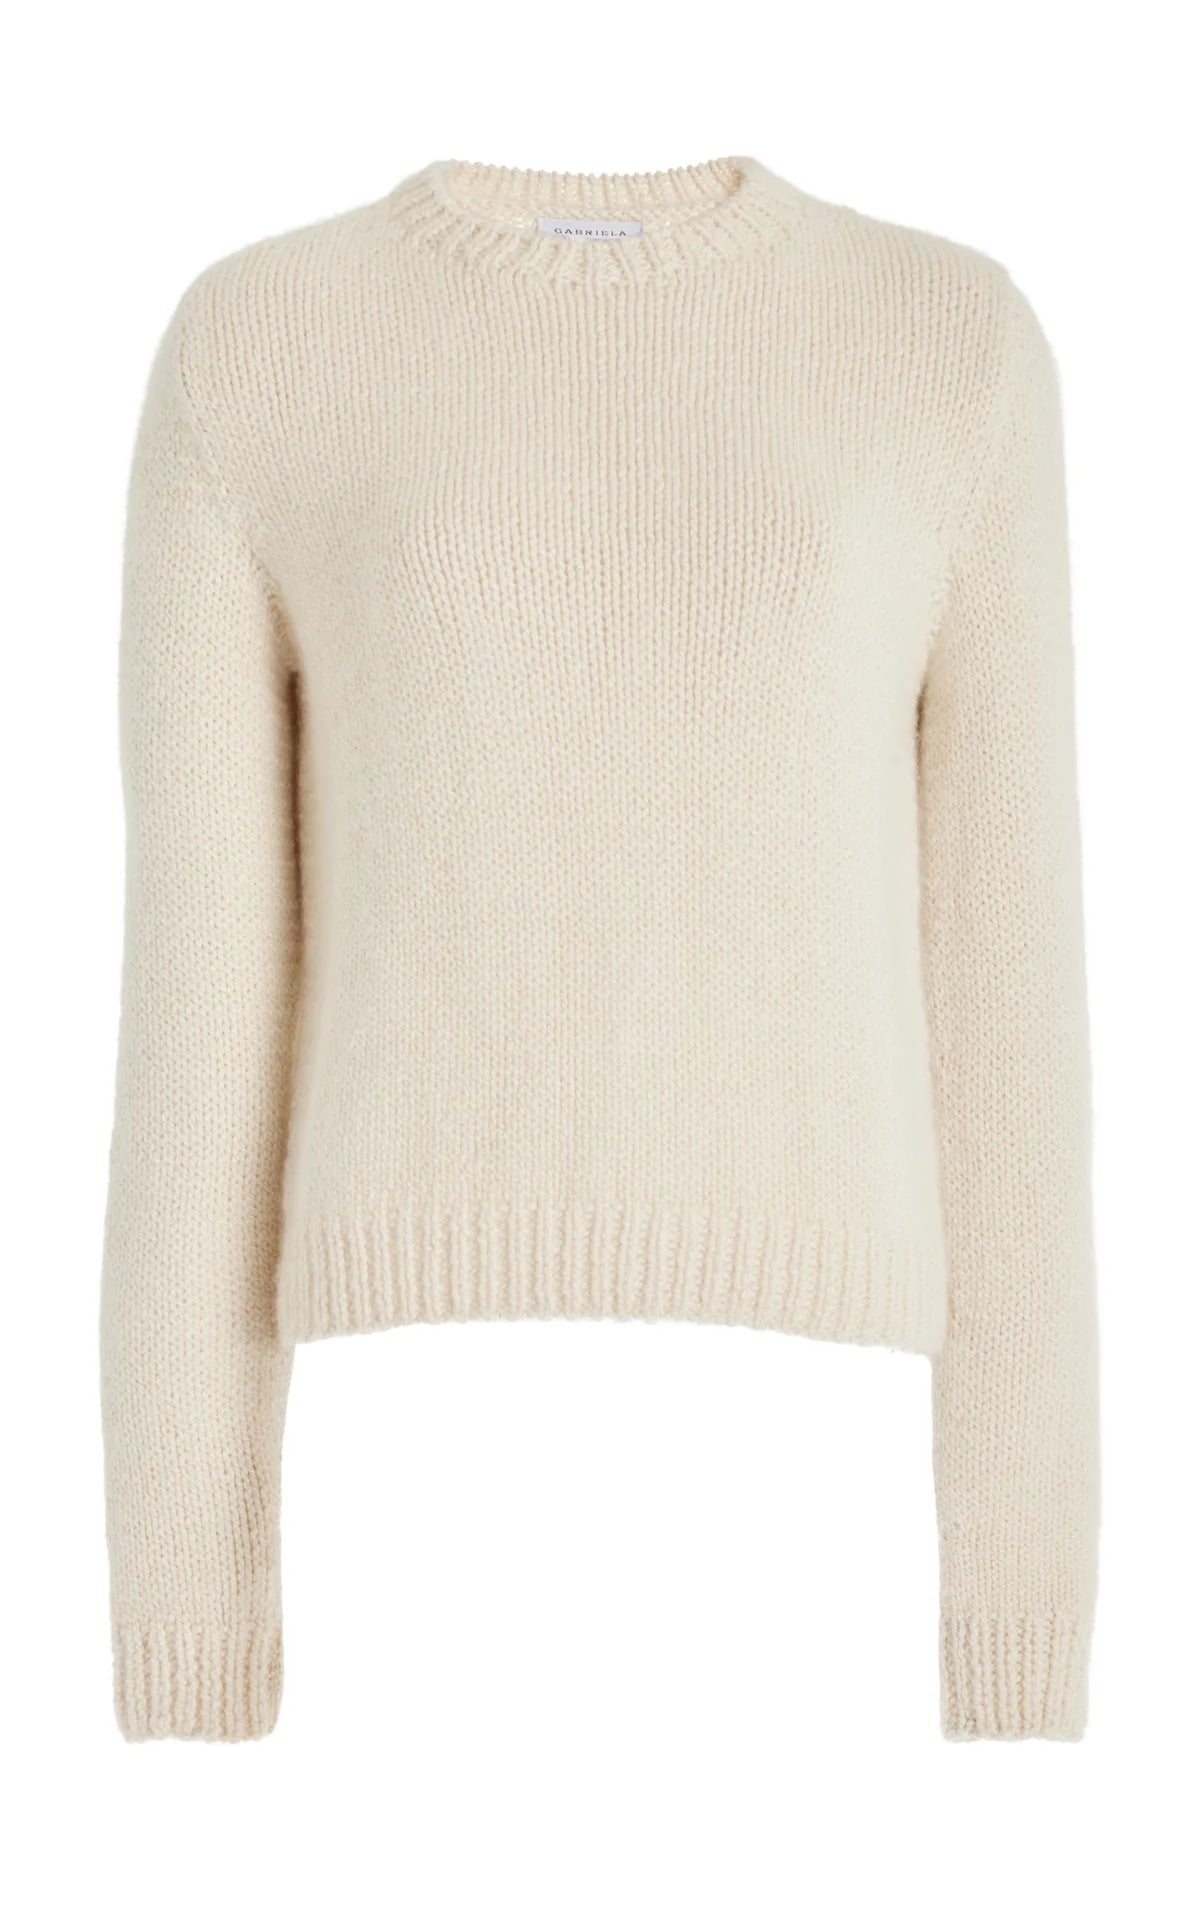 Rhun Sweater